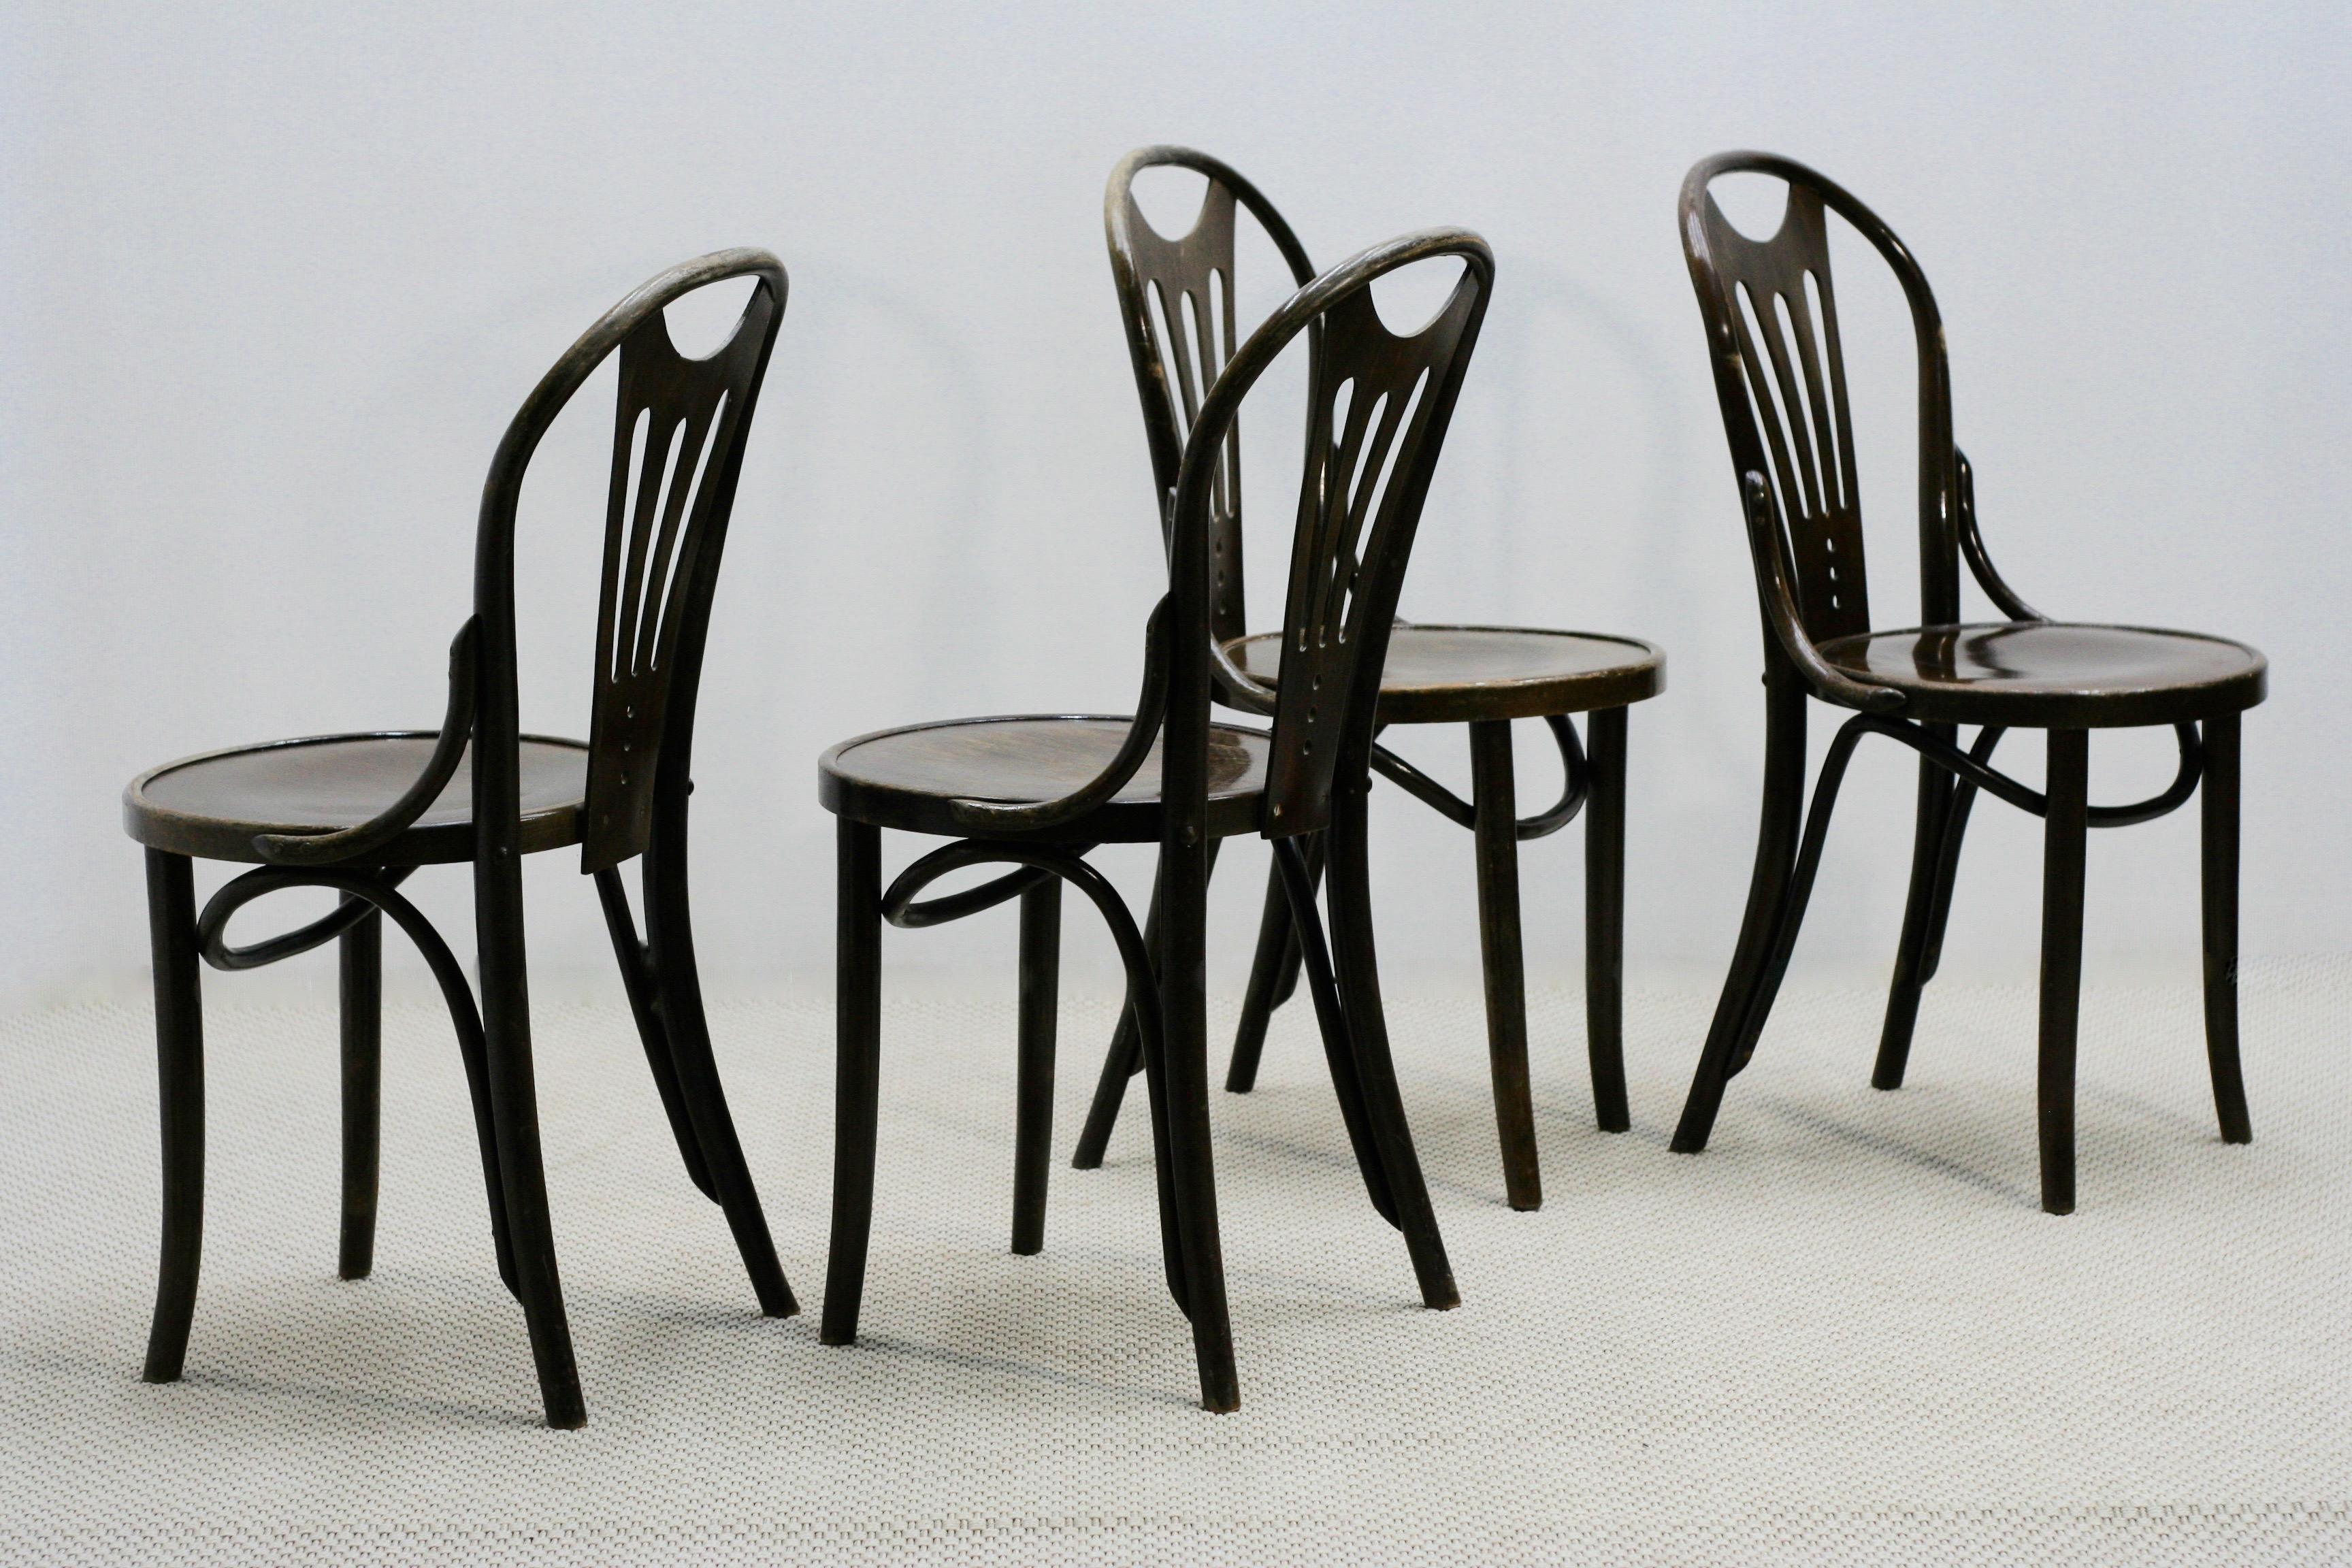 Set of Four Art Nouveau Thonet Style Bentwood Chairs, 1920s (Art nouveau)